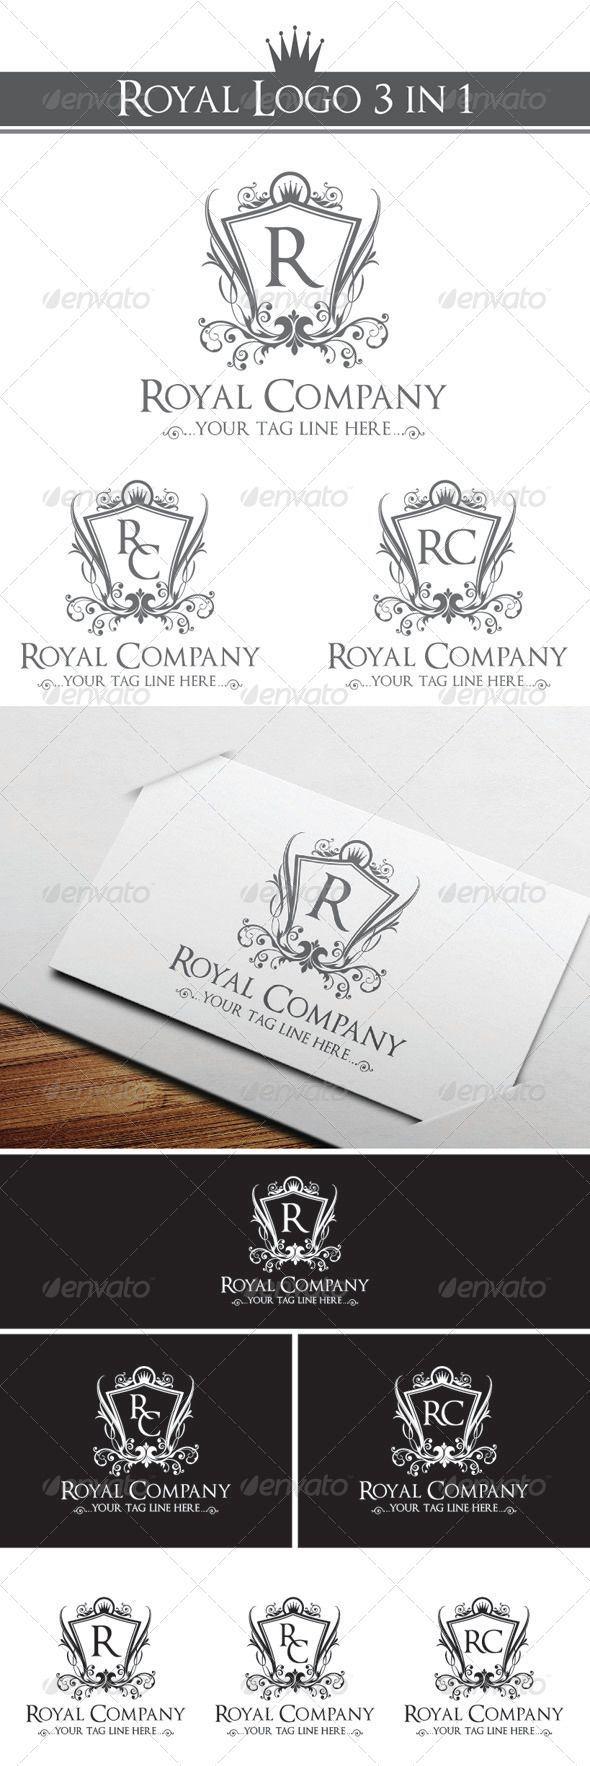 Royal Company Logo - Royal Company Logo Template #GraphicRiver Royal Company logo 3 in 1